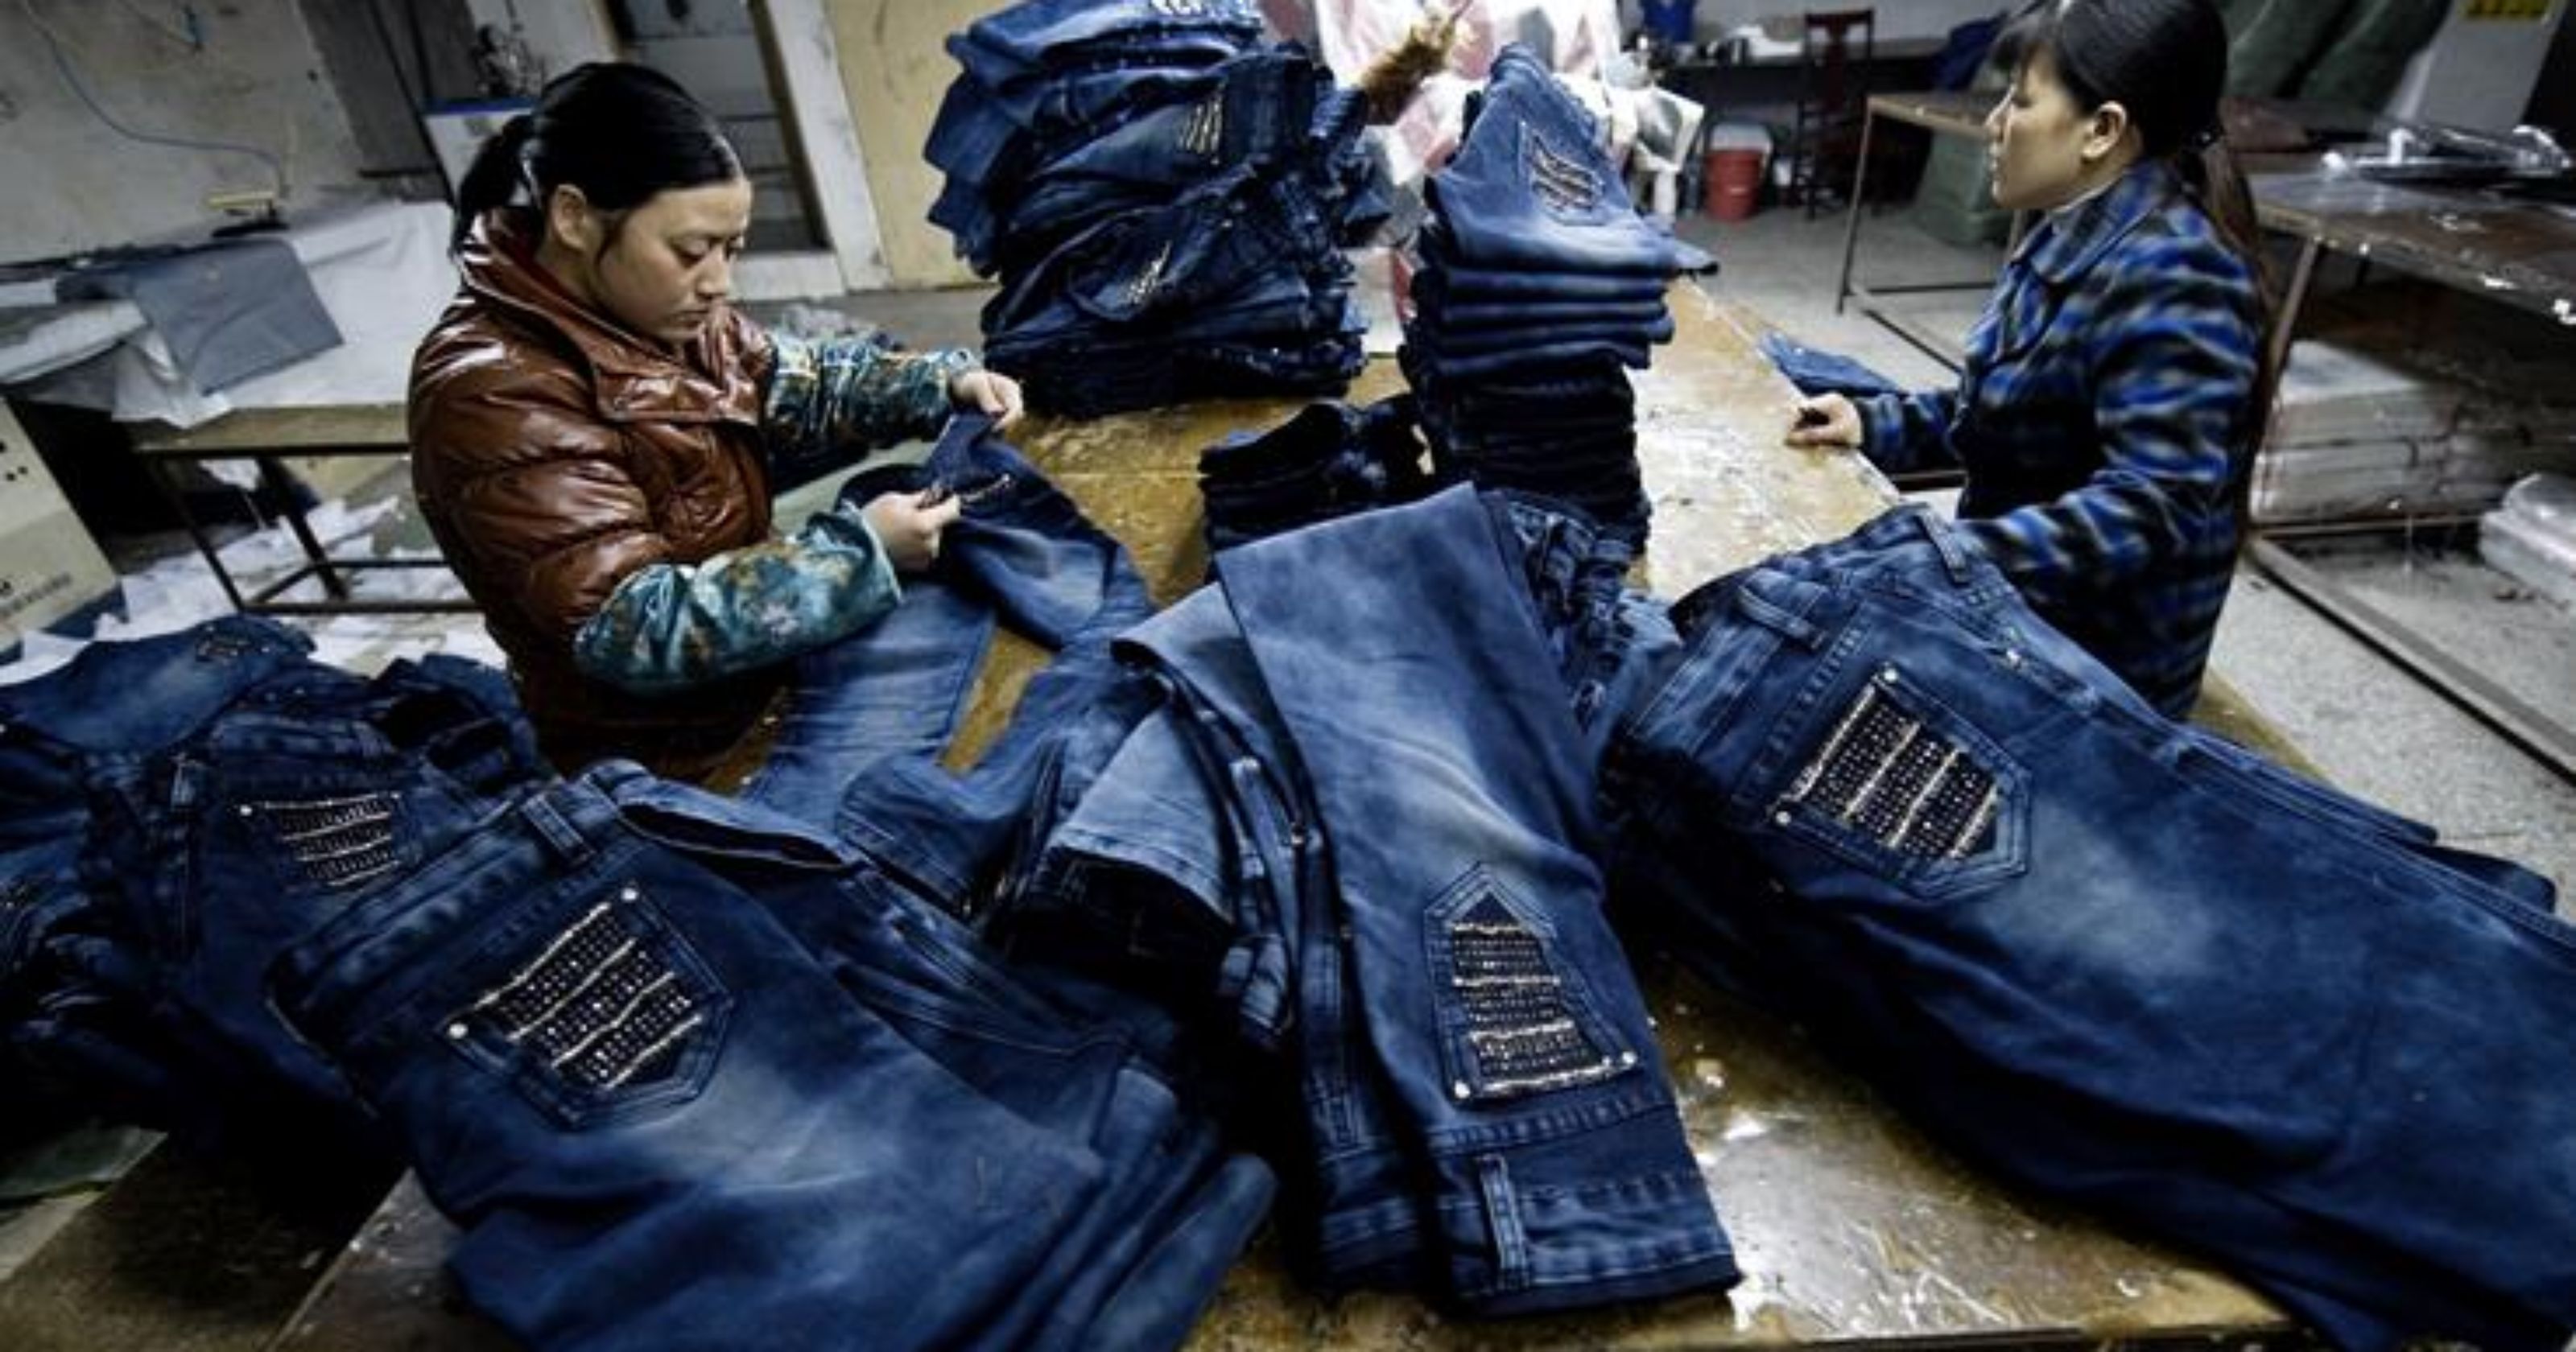 Джинсы на китайском. Производство джинсов. Фабрика джинсы Китай. Китайцы в джинсах. Производство джинсовой одежды.